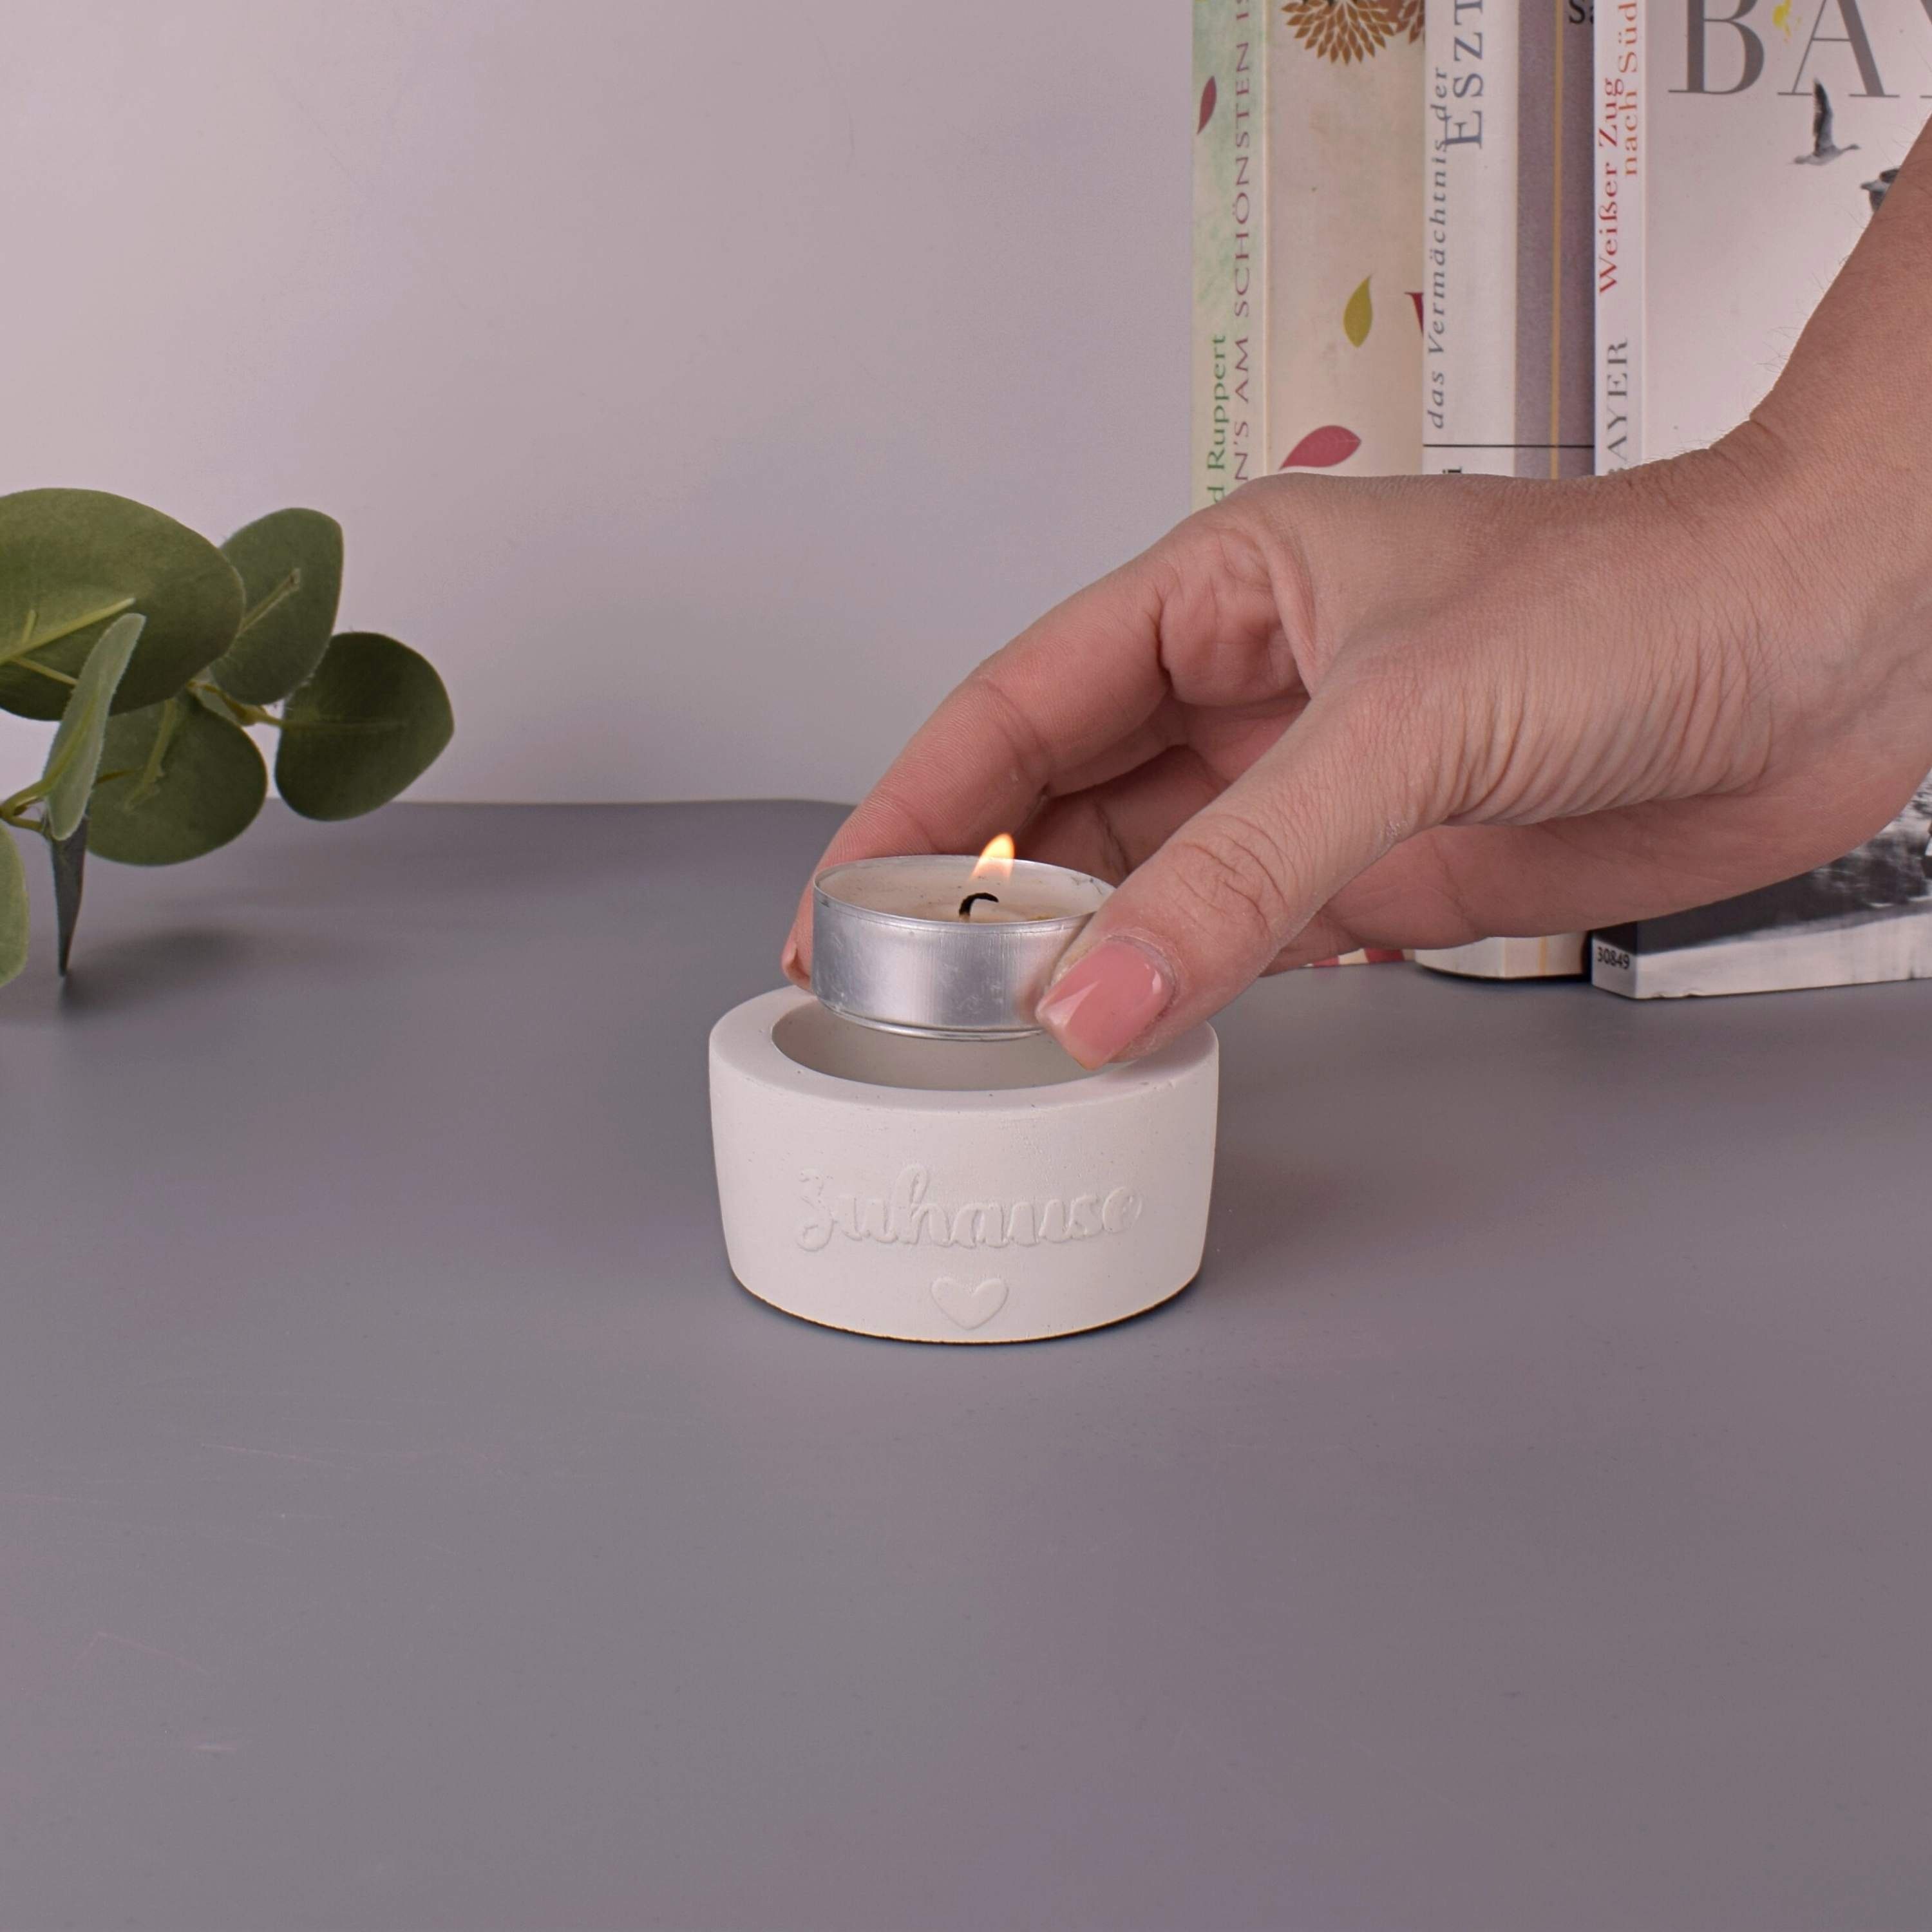 Beton-Design TIVENDIS "Zuhause" weiß Teelichthalter Teelichthalter (Packung)